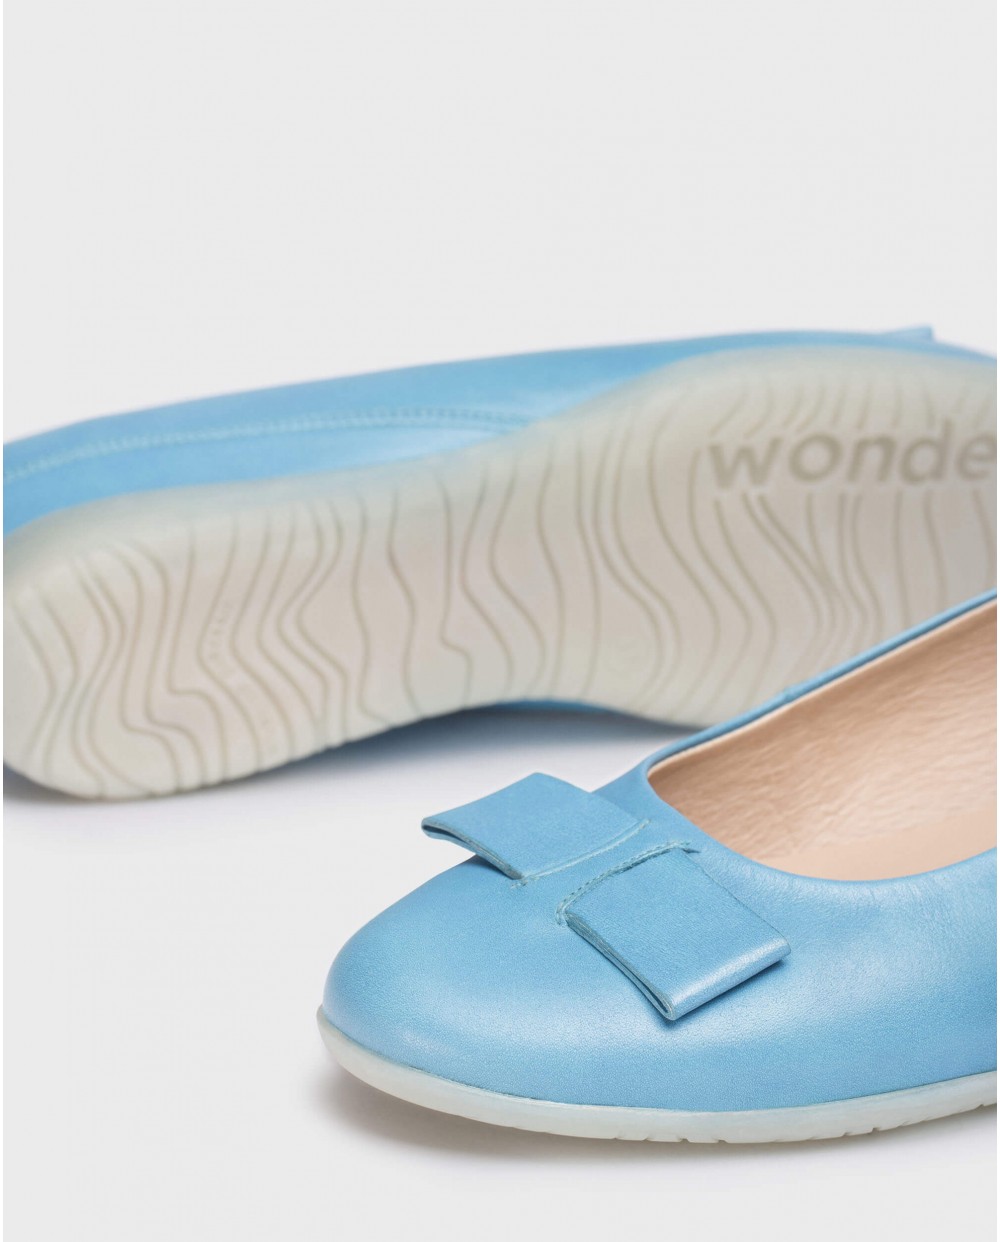 Wonders-Zapatos planos-Bailarina piel con lazo